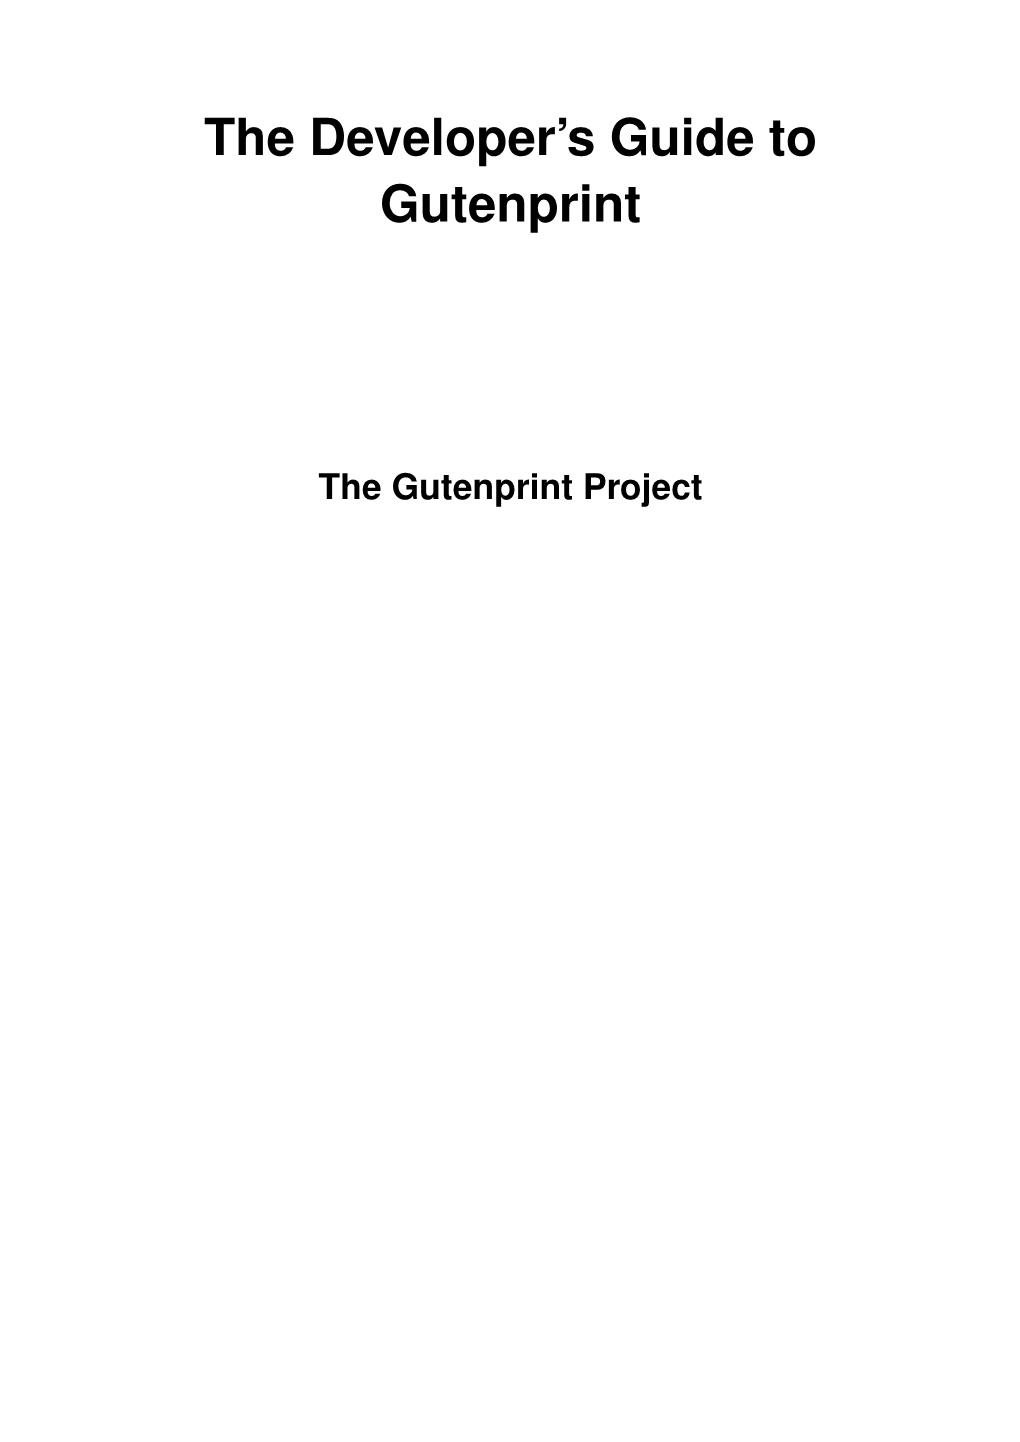 The Developer's Guide to Gutenprint